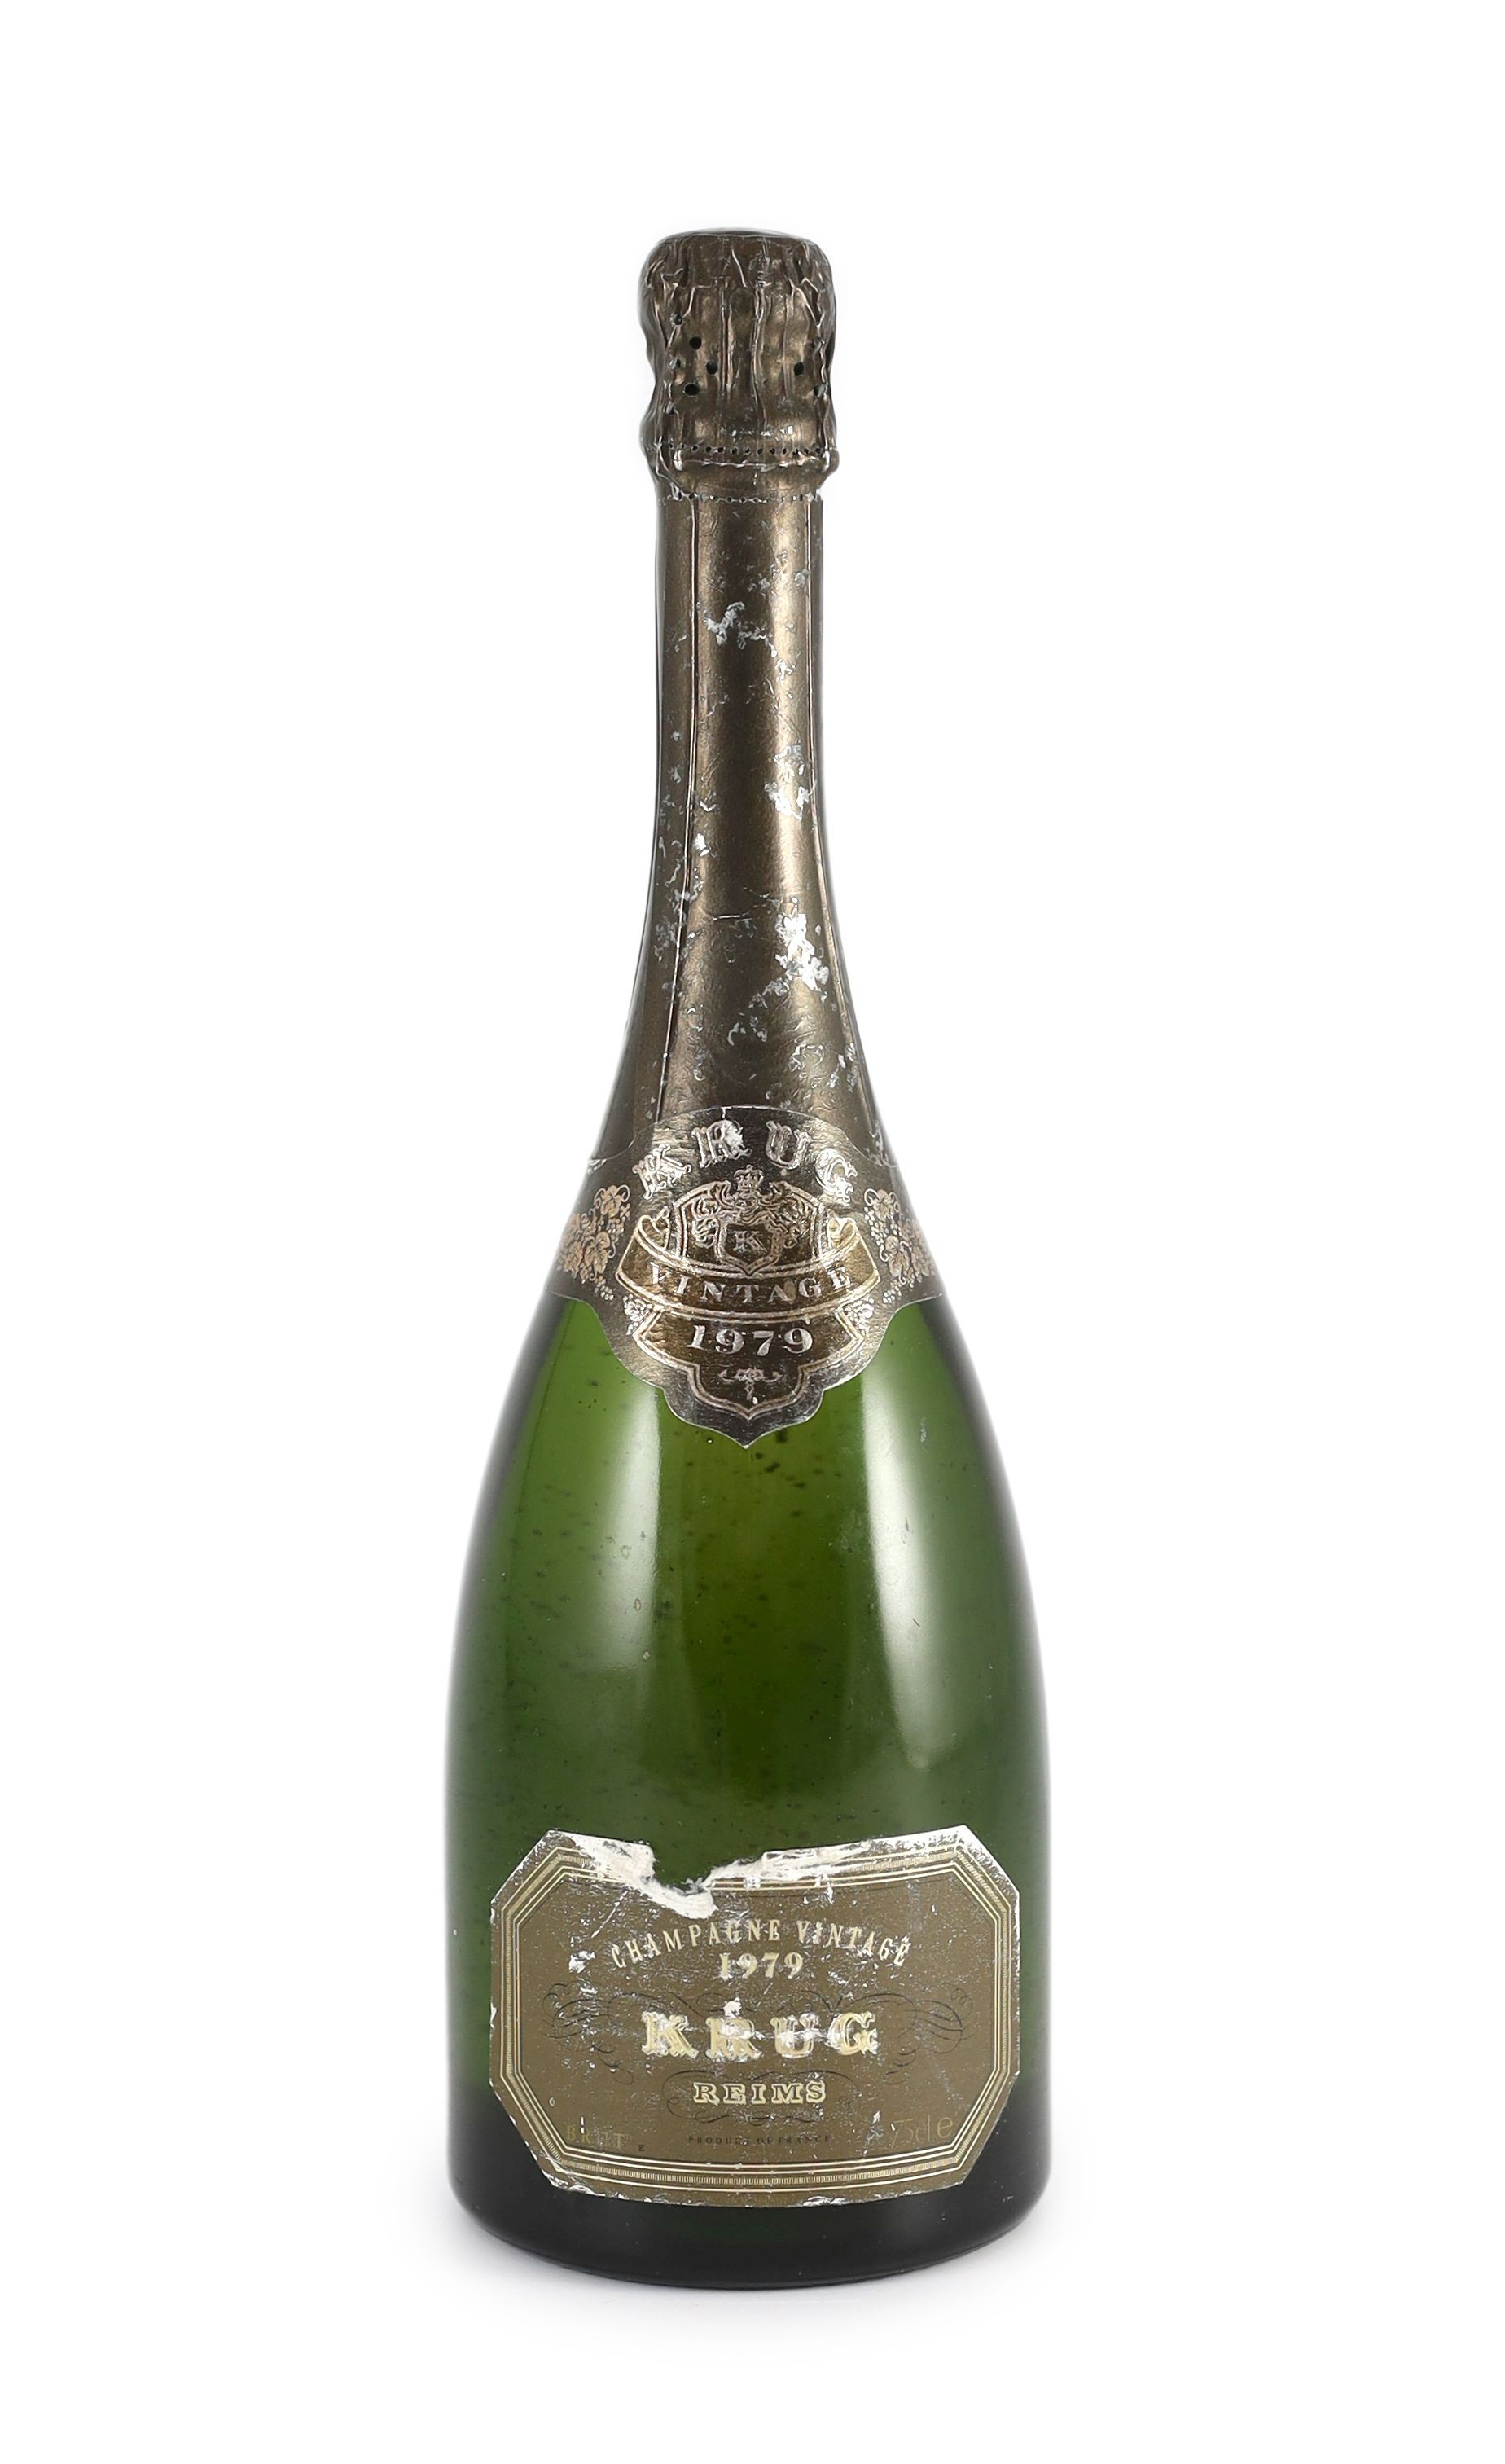 A bottle of Krug 1979 vintage champagne, 32cm high